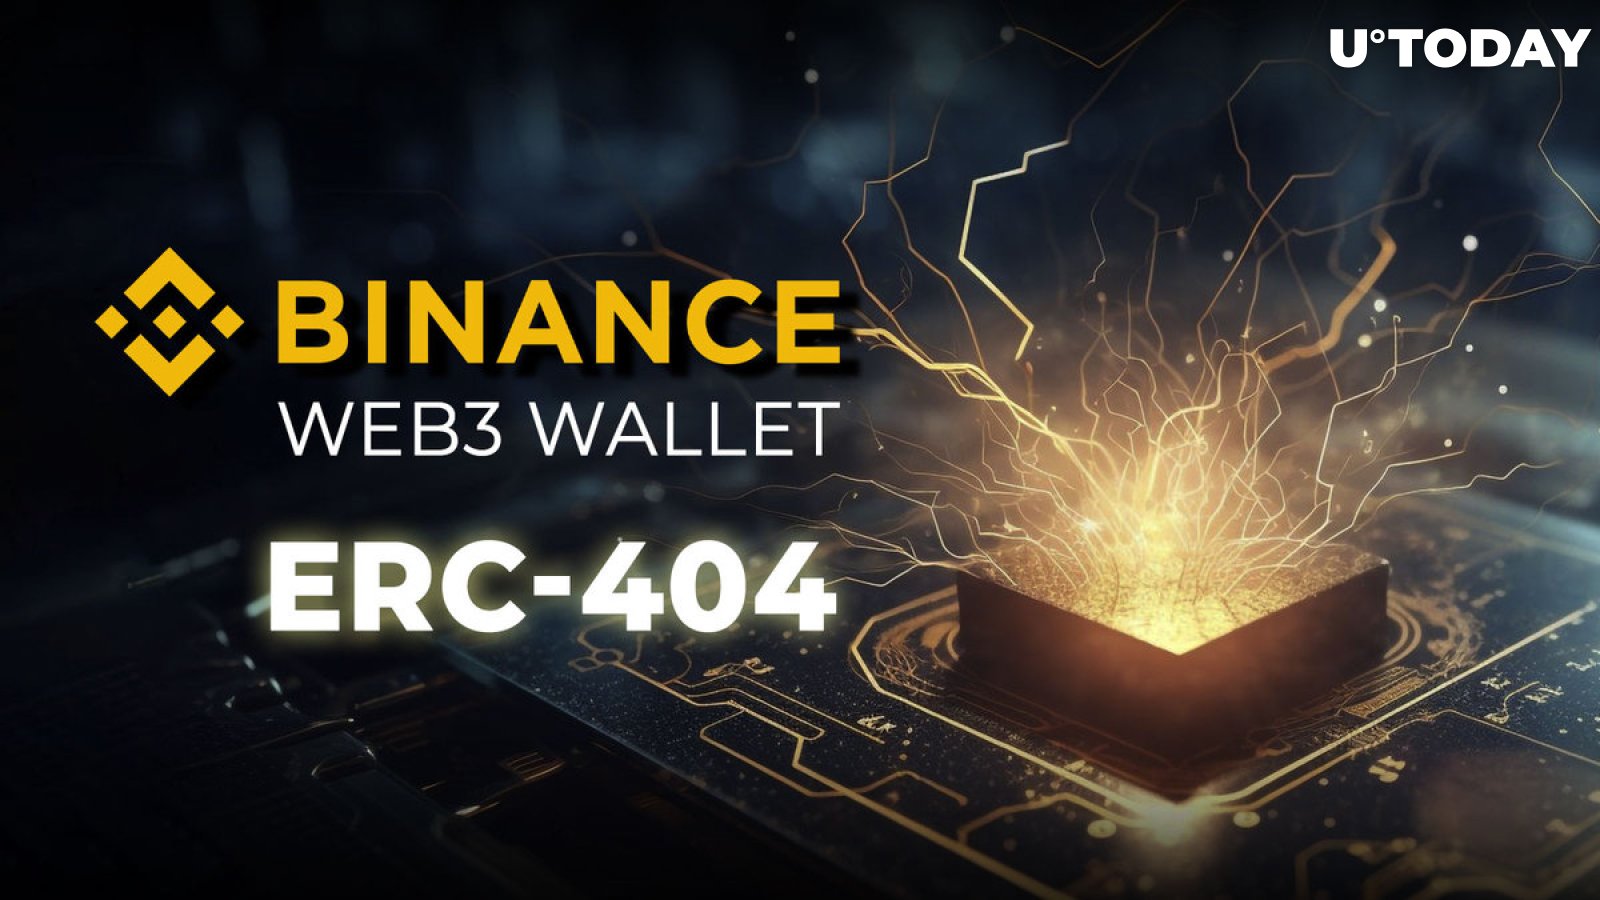 Το πορτοφόλι Binance Web3 ανακοινώνει τεράστιο δώρο κρυπτογράφησης για να γιορτάσει την ενσωμάτωση του ERC-404